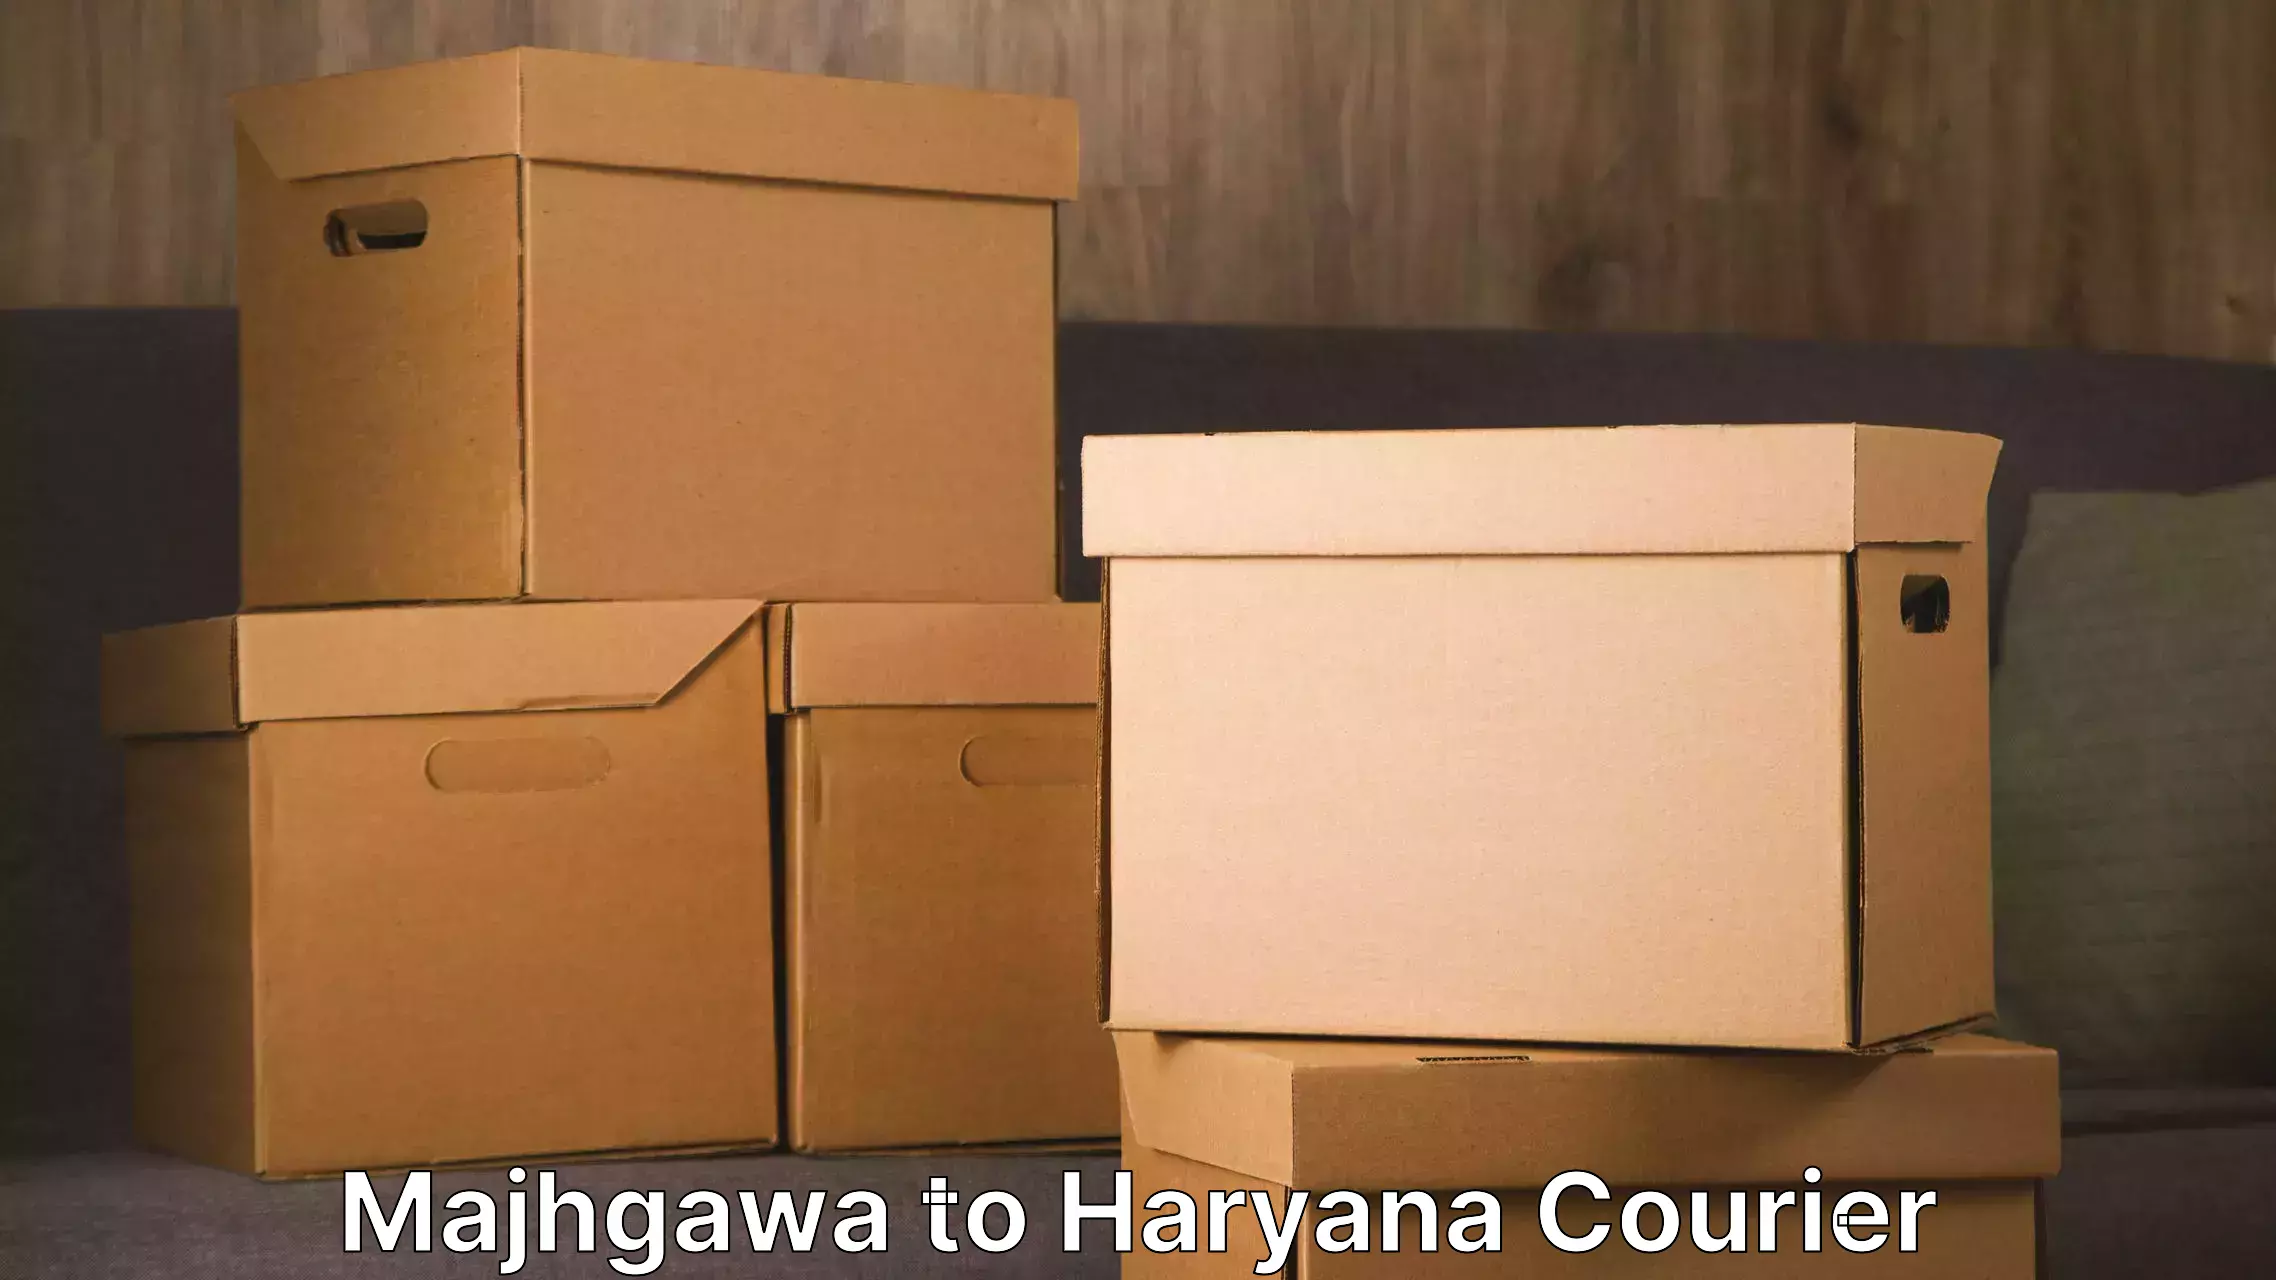 Dependable furniture movers Majhgawa to Chaudhary Charan Singh Haryana Agricultural University Hisar